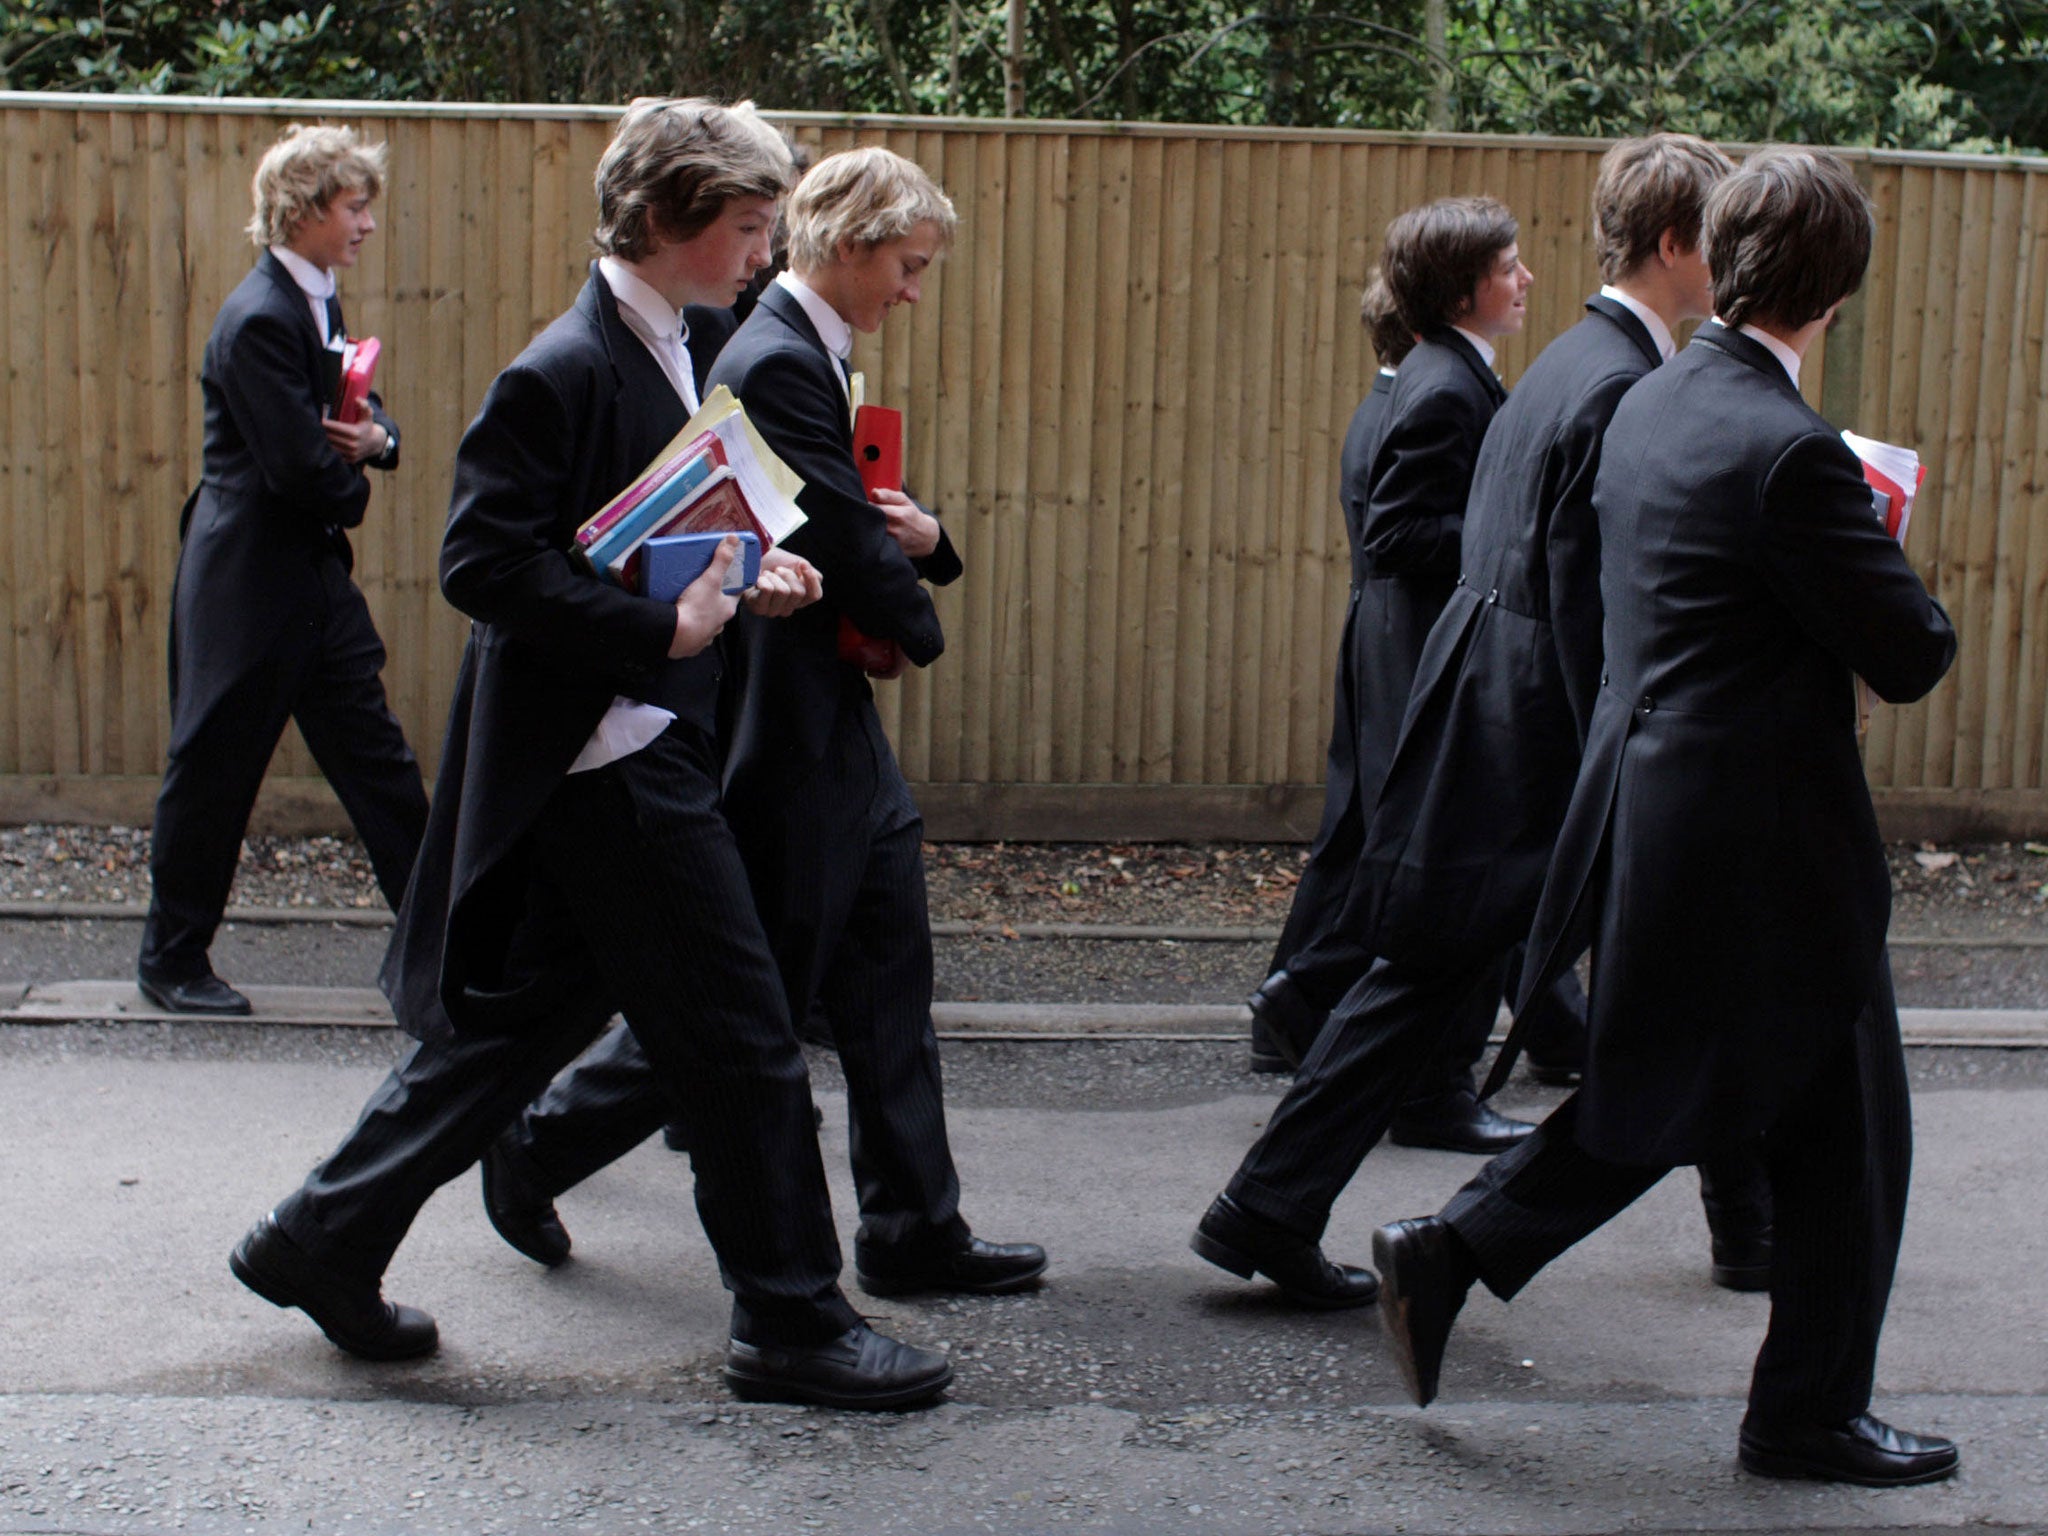 Boys make their way to classes at Eton